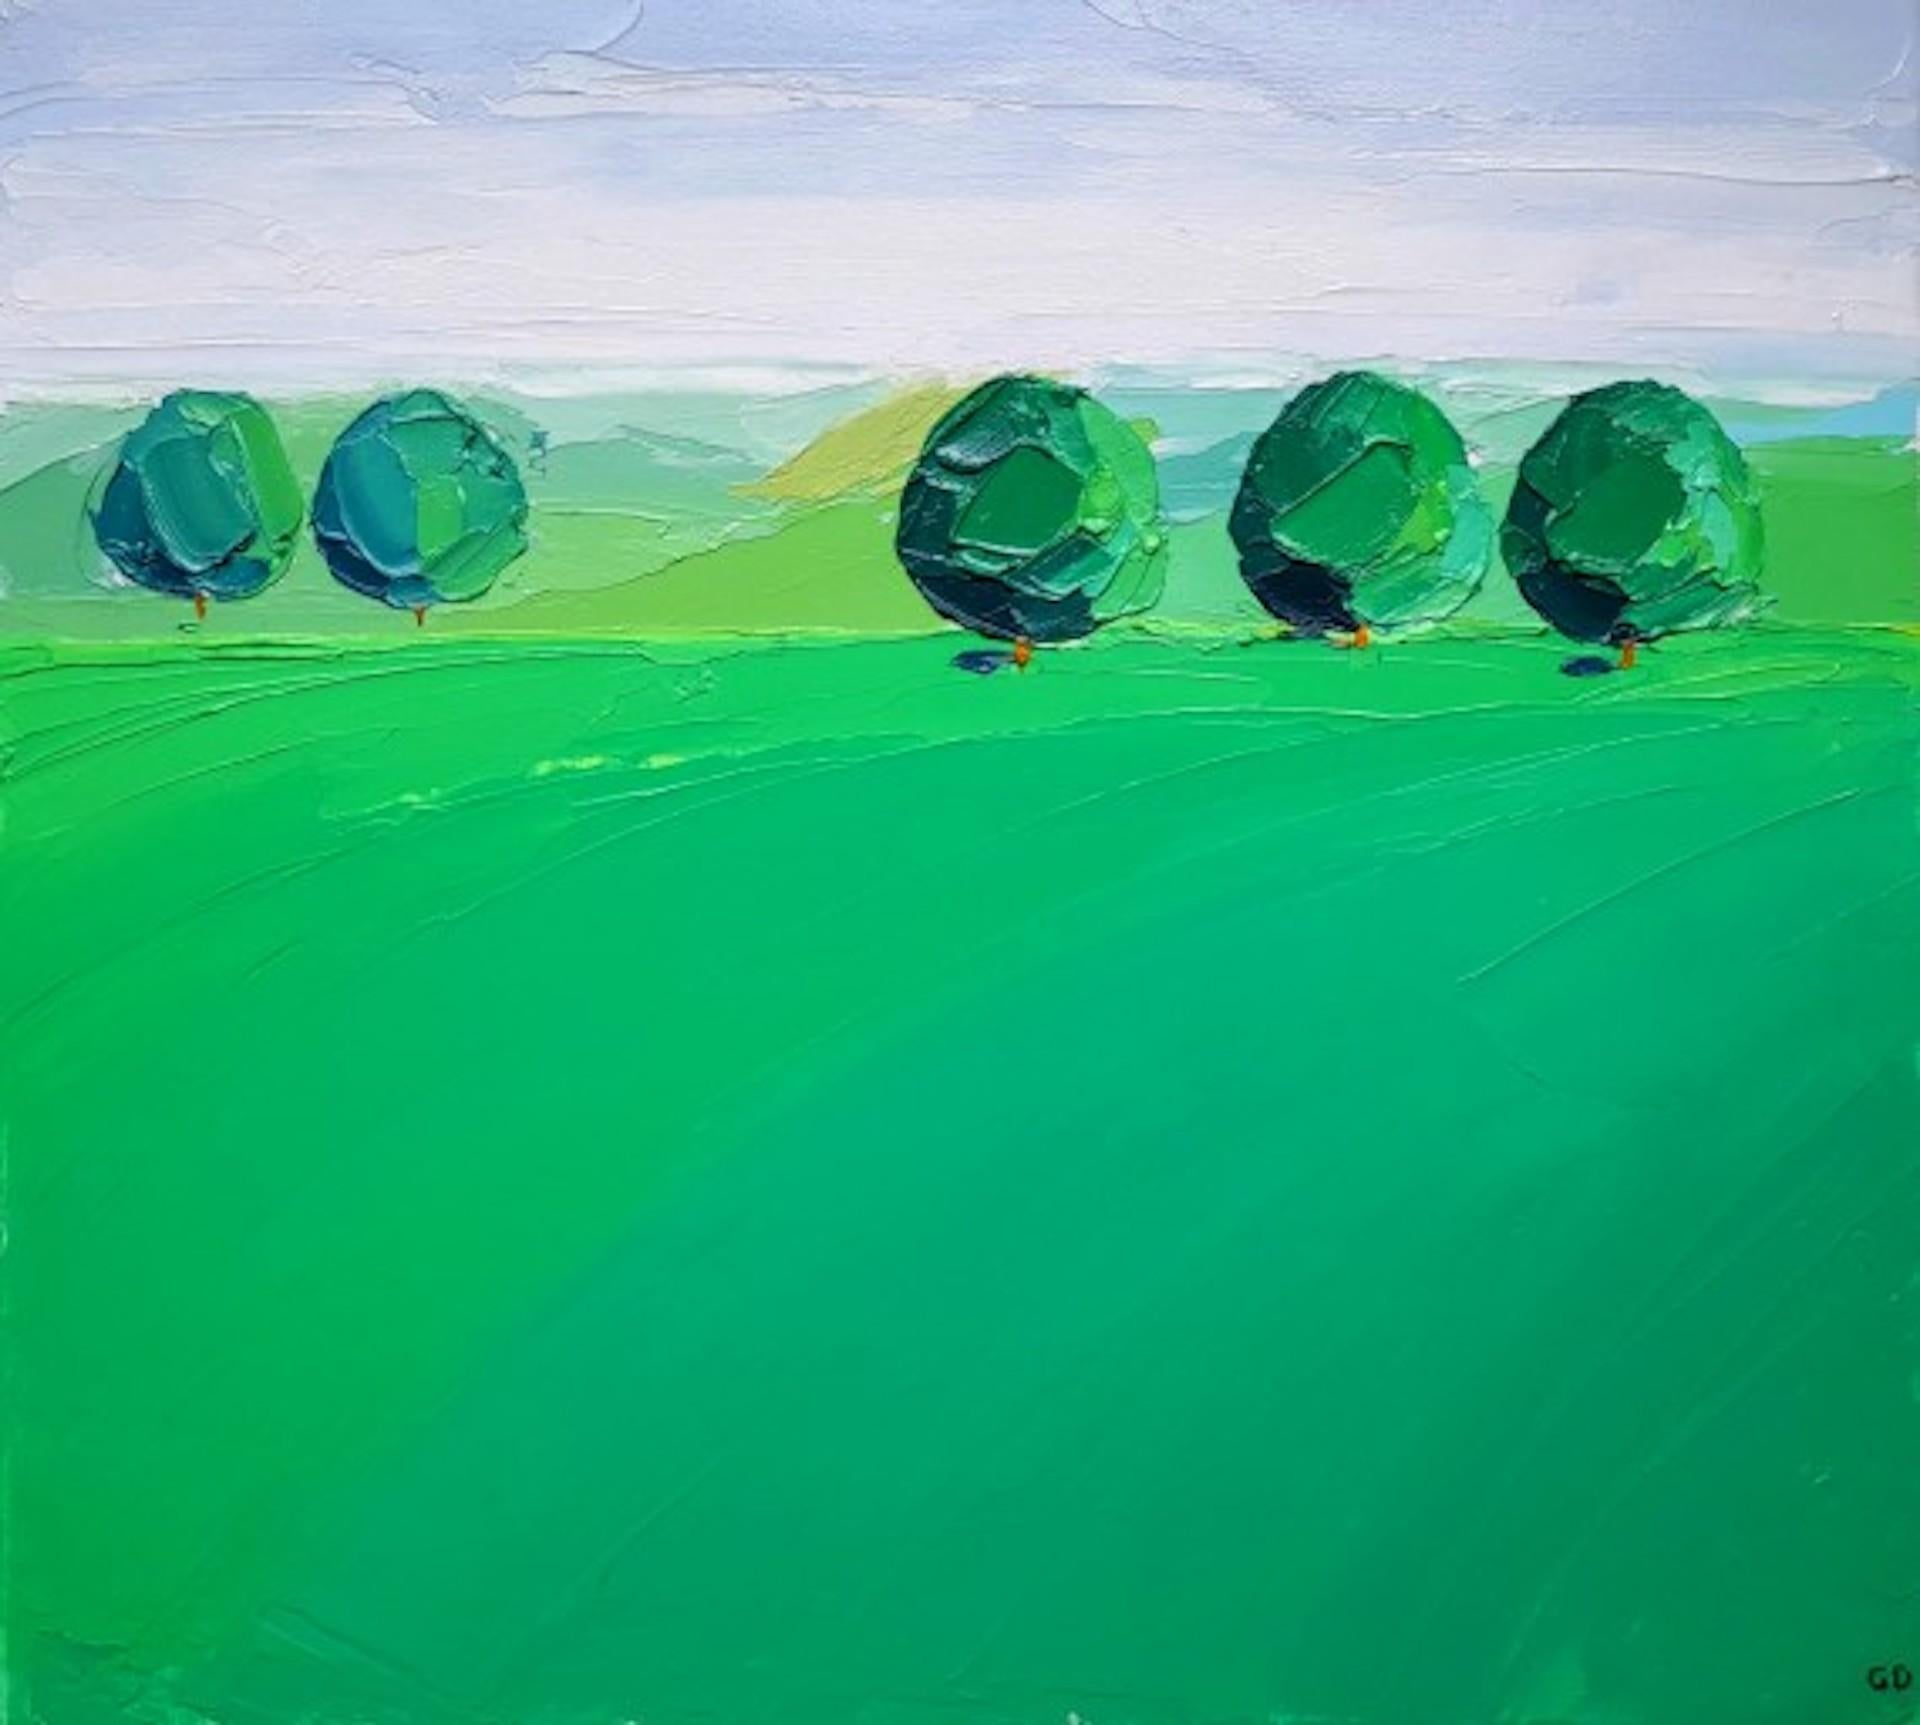 Arbres verts, Cotswolds [2020]
Original
Paysage
Peinture à l'huile sur toile
Taille de la toile : H:50 cm x L:55 cm x P:2cm
Vendu sans cadre
Veuillez noter que les images insitu ne sont qu'une indication de l'aspect d'une pièce

green Trees" est une